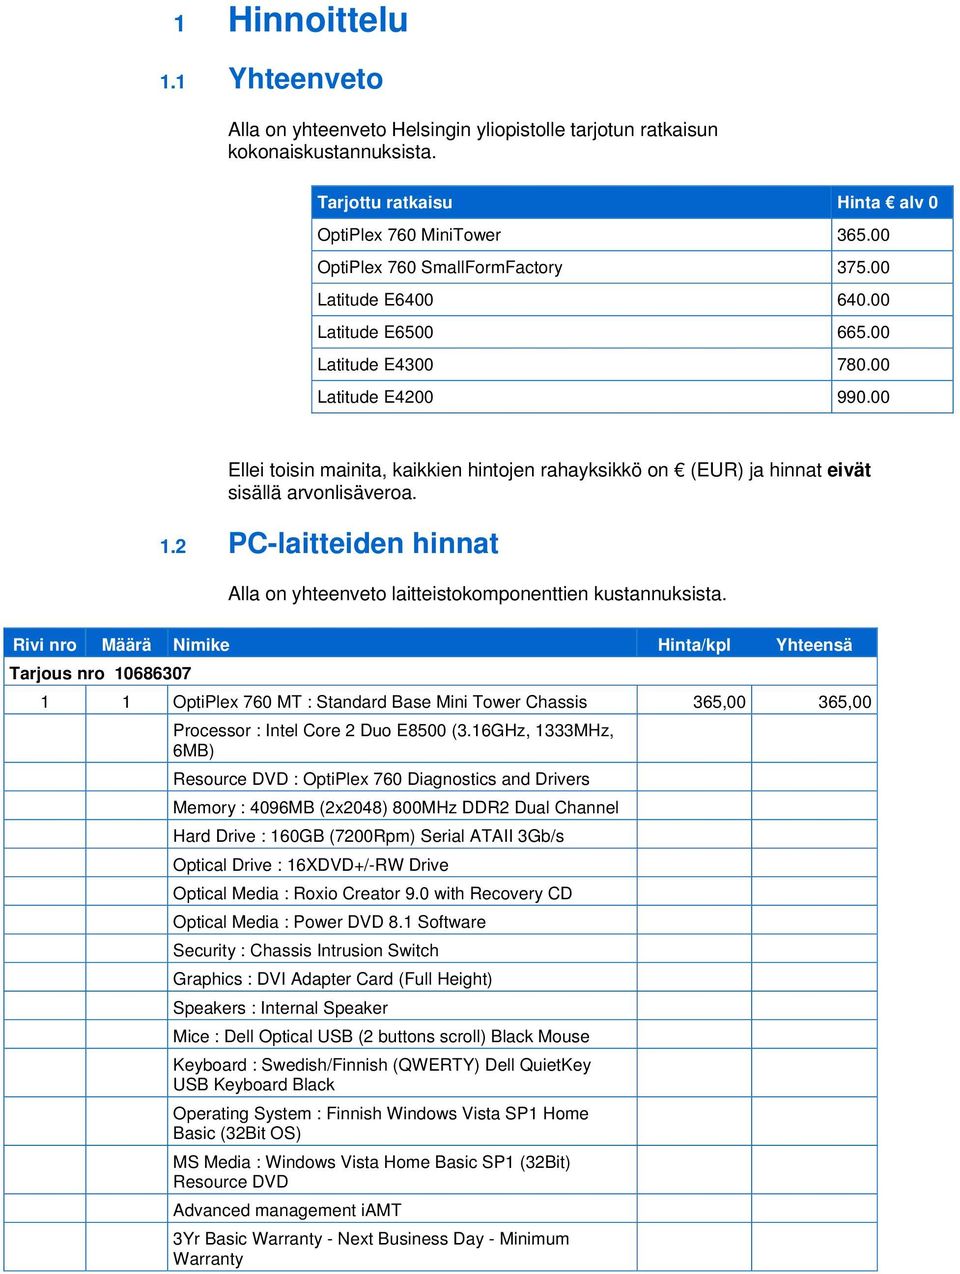 00 Ellei toisin mainita, kaikkien hintojen rahayksikkö on (EUR) ja hinnat eivät sisällä arvonlisäveroa. 1.2 PC-laitteiden hinnat Alla on yhteenveto laitteistokomponenttien kustannuksista.